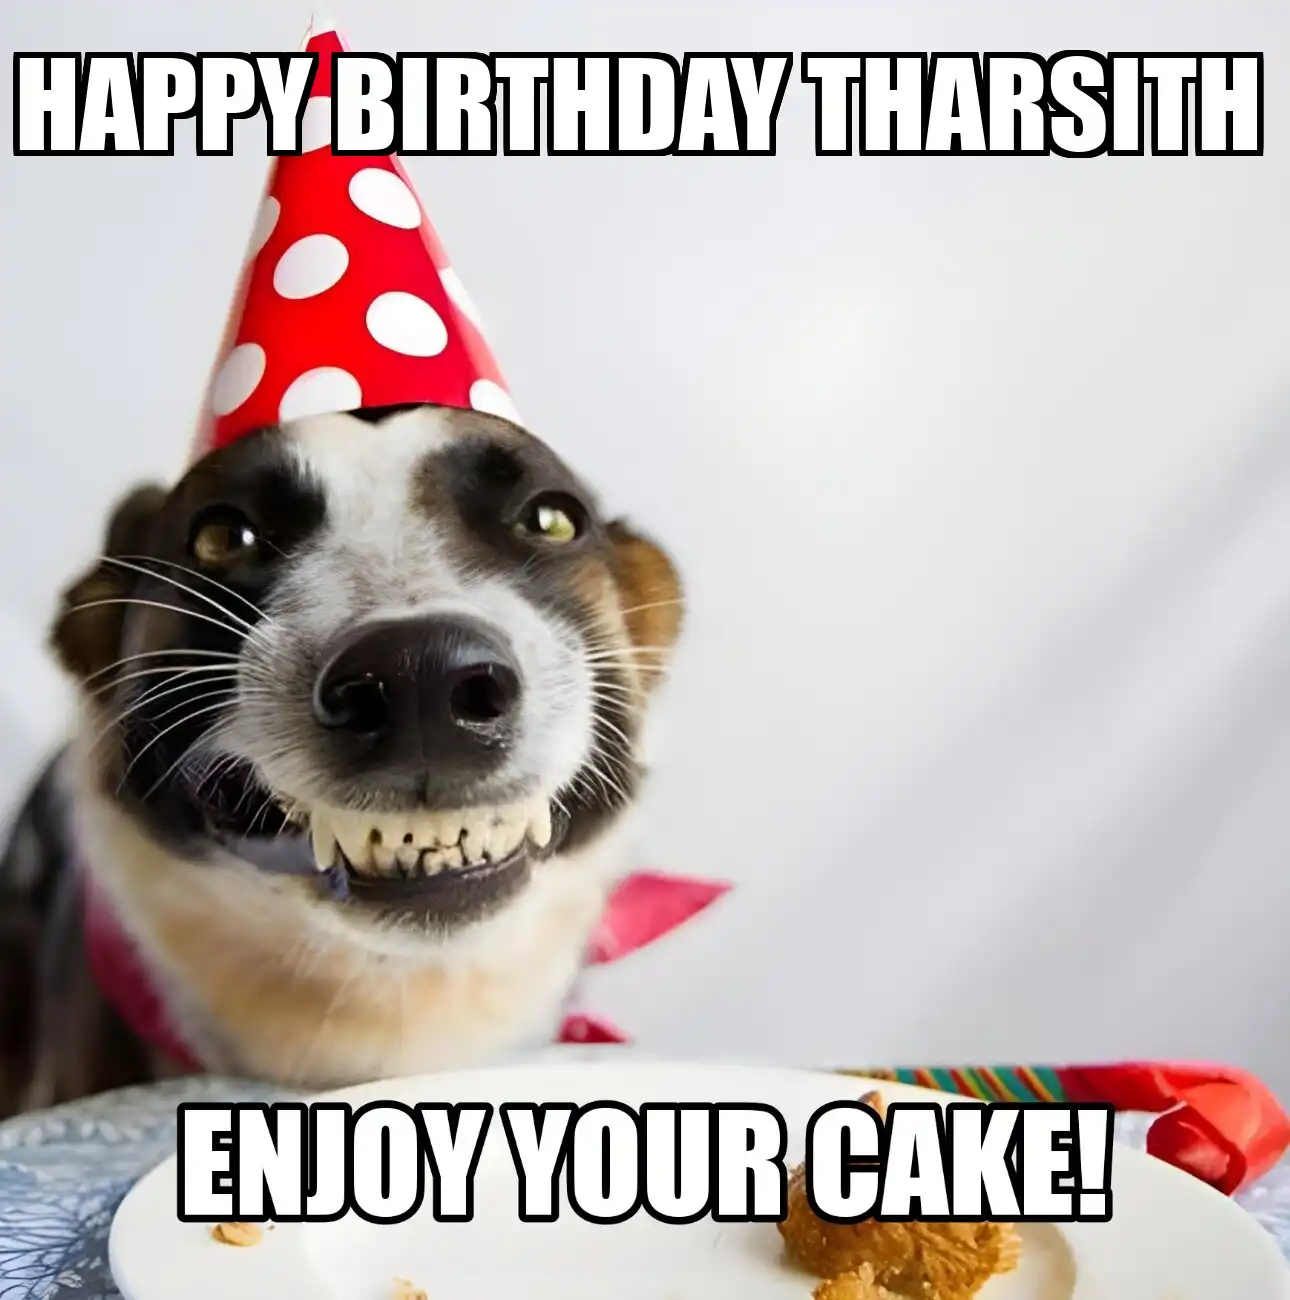 Happy Birthday Tharsith Enjoy Your Cake Dog Meme